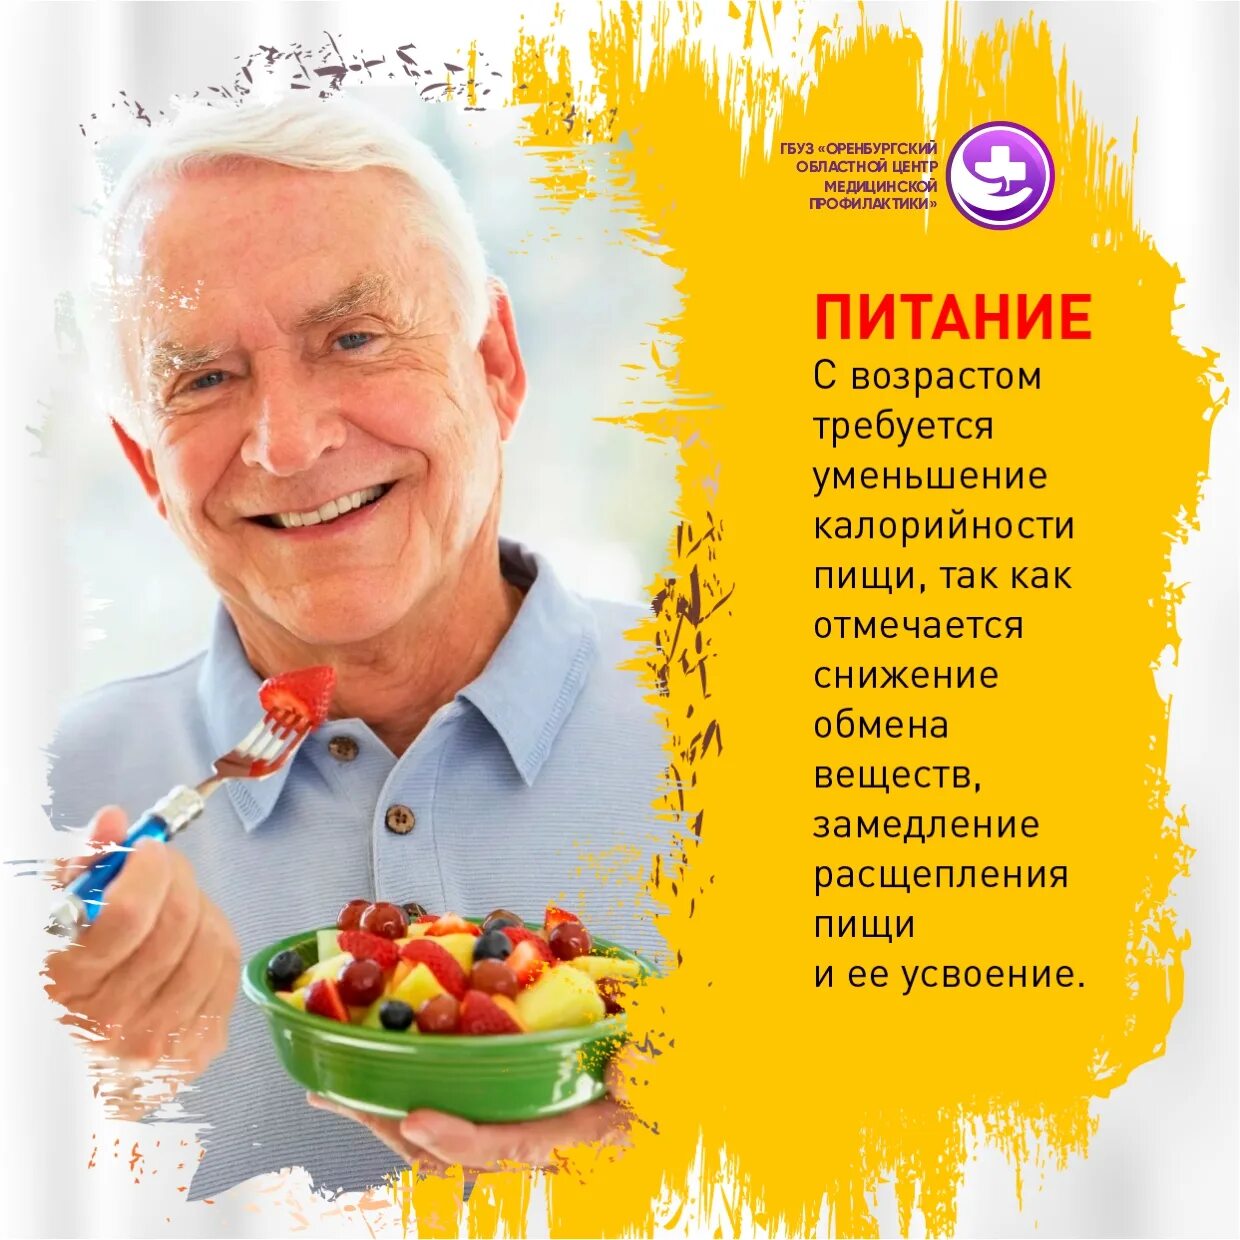 Долголетие оренбург. Активное долголетие. Активное долголетие Фрязино. Питание в пожилом возрасте. Хорошее здоровье в пожилом возрасте.